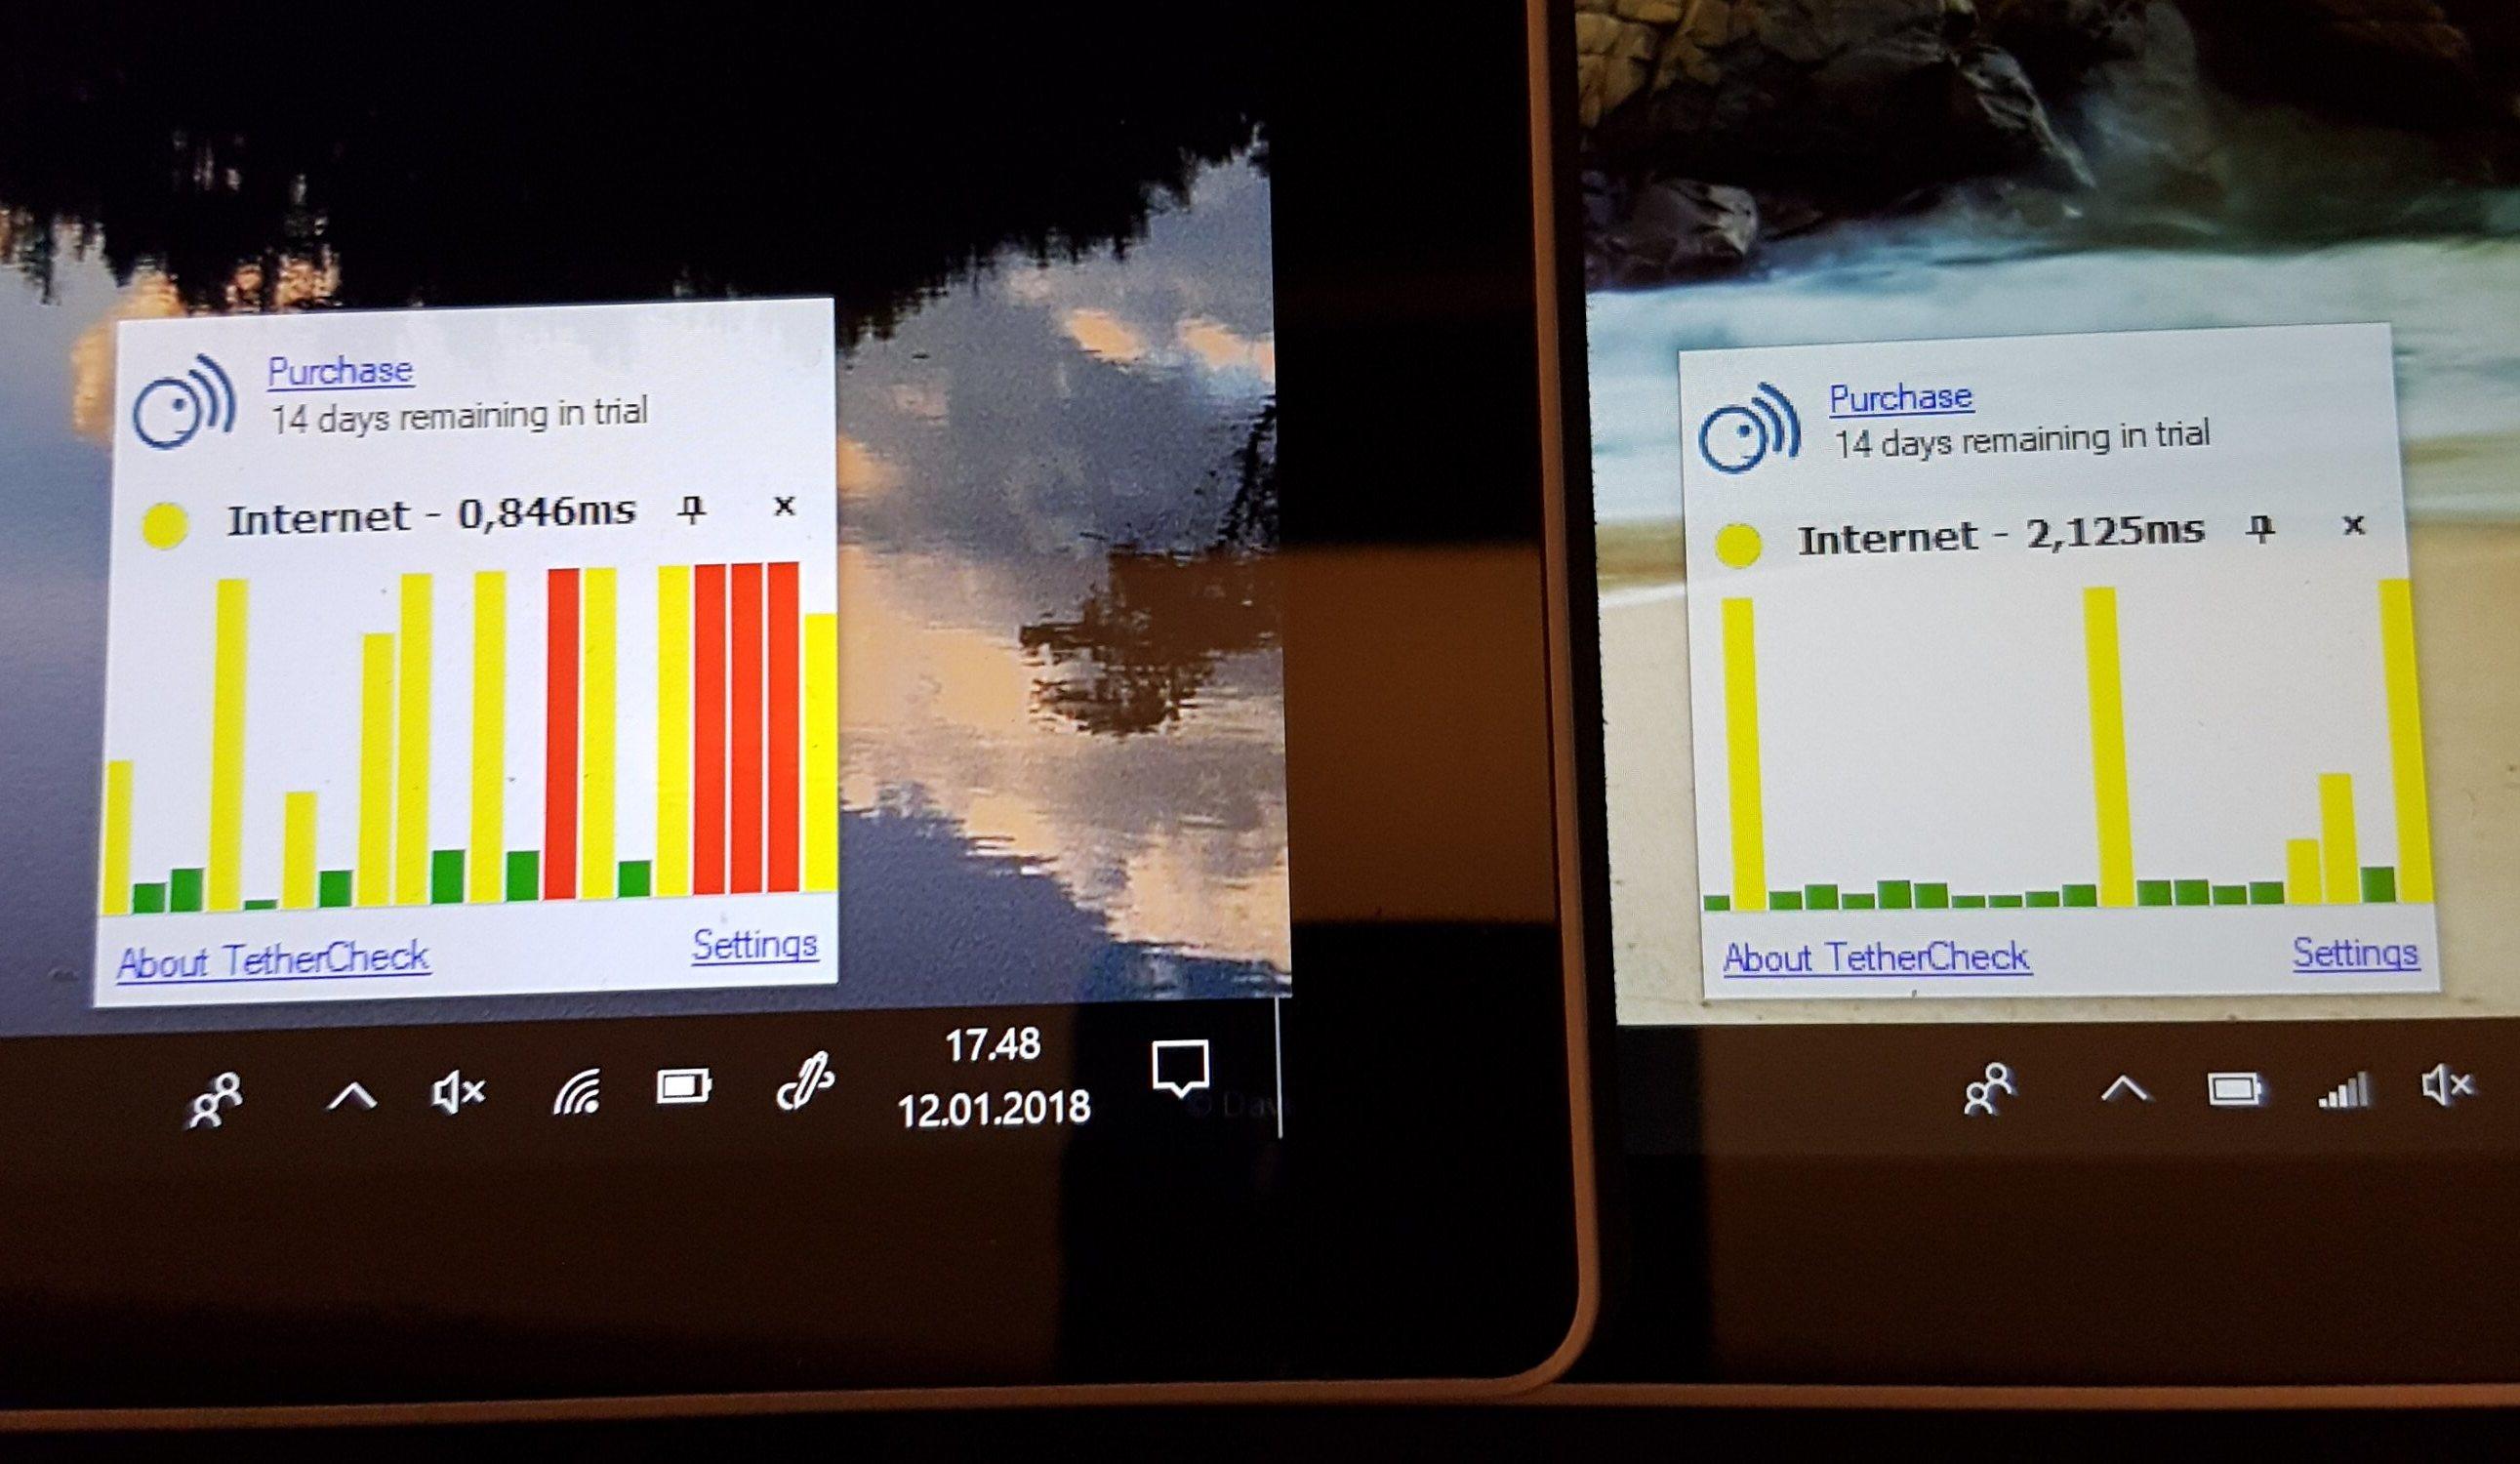 Surface Pro LTE (til høyre) gir en mer stabil nettforbindelse enn det vi får via en mobiltelefon.